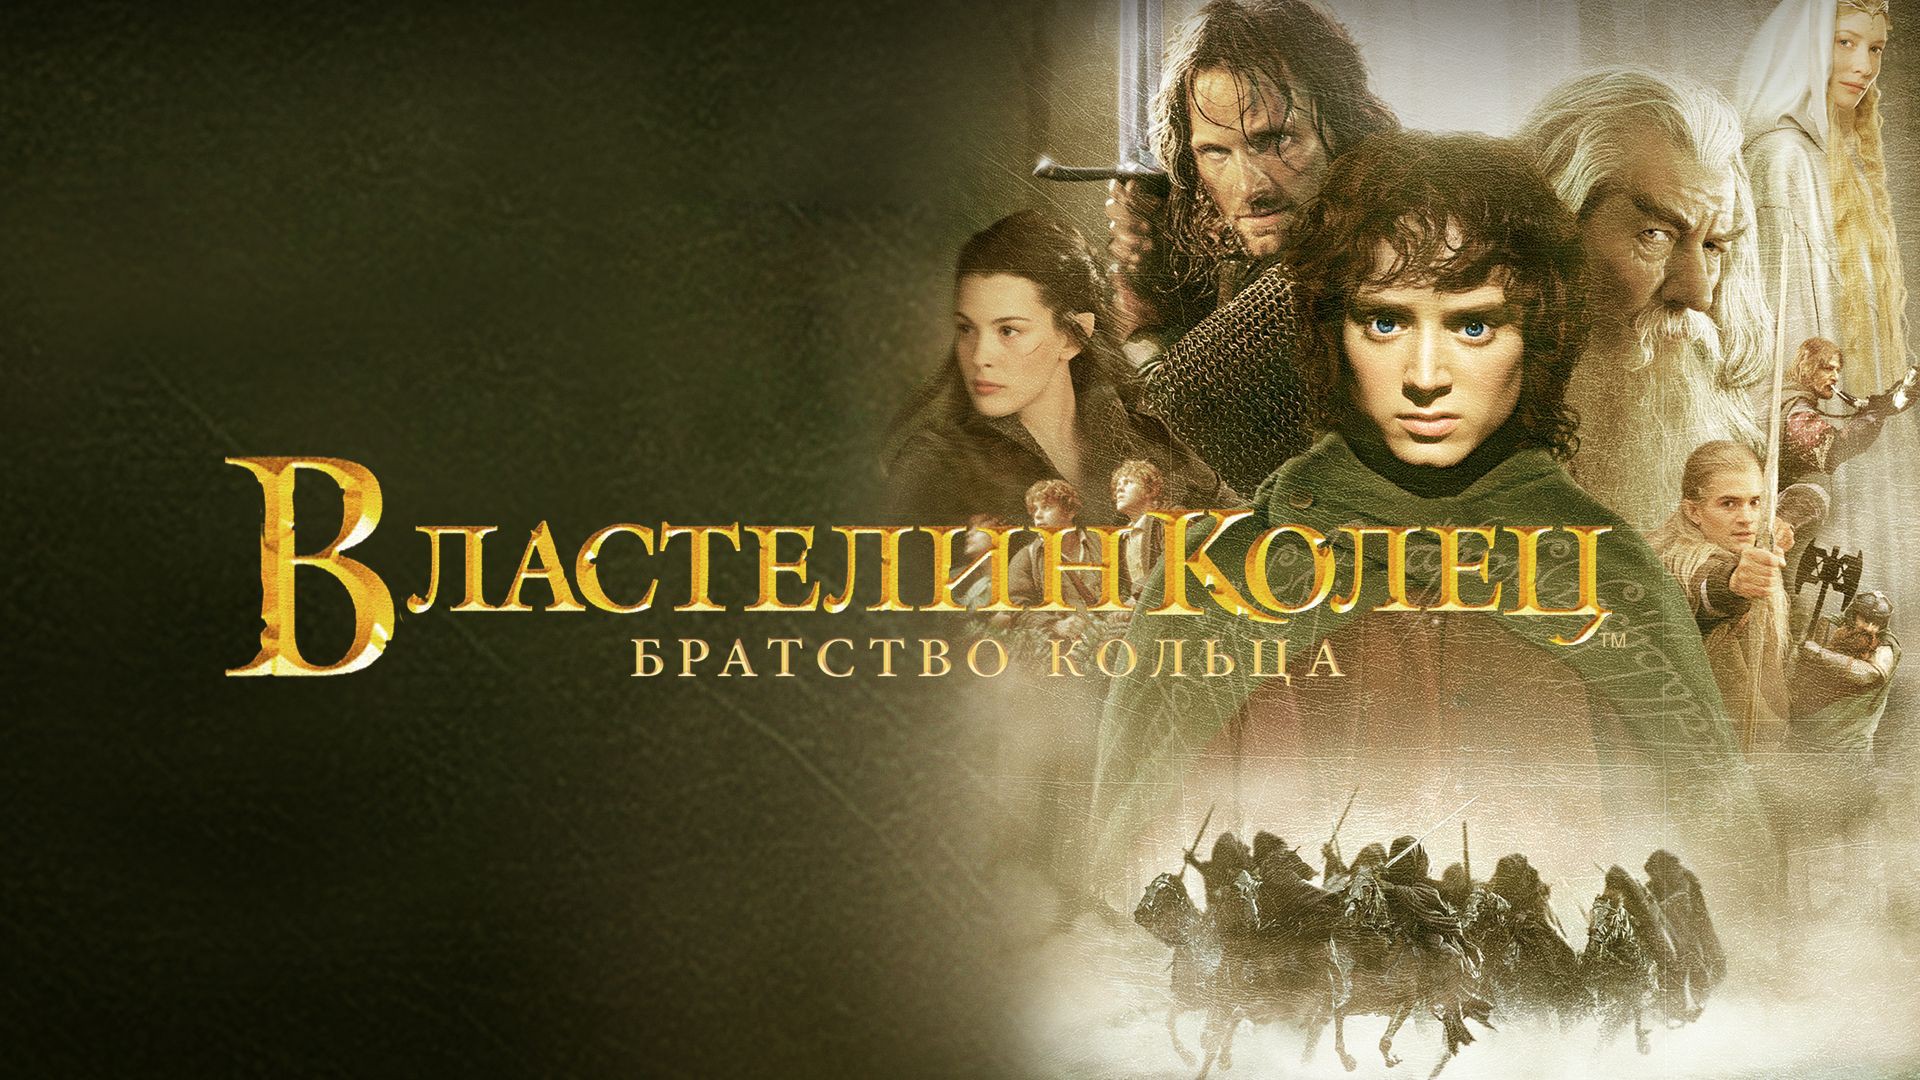 Властелин колец: Братство кольца (2001) — Русский трейлер